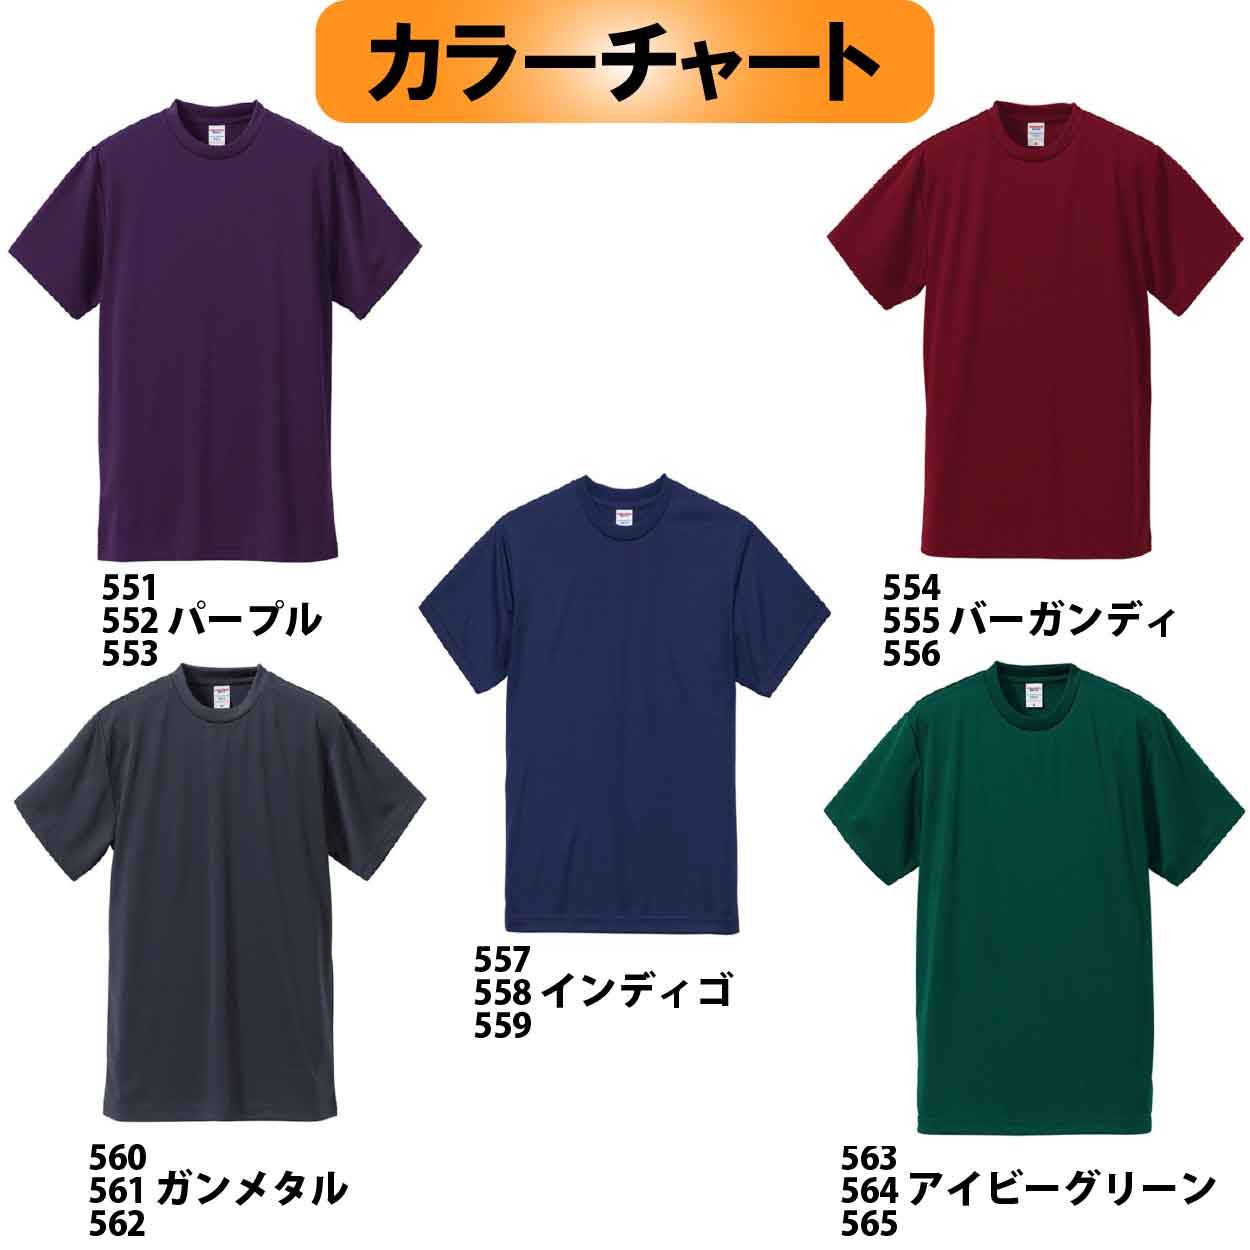 【在庫限り】５５１　JOKERオリジナル刺繍Tシャツ　M  カラー:パープル【限定生産】画像